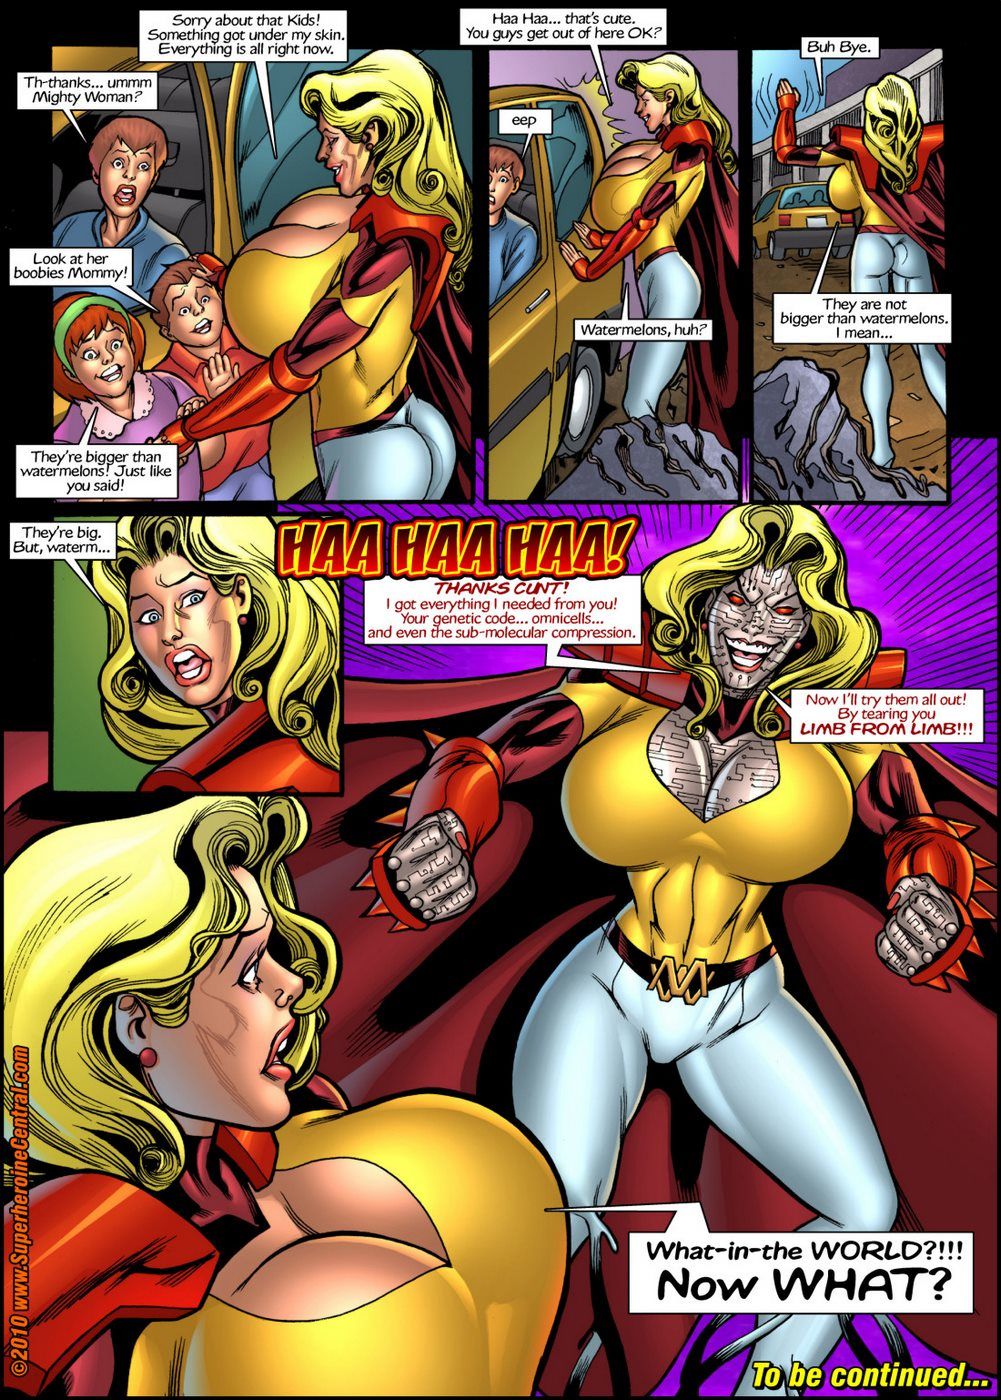 superheroinecentral poderoso mulher prime no principal alvo